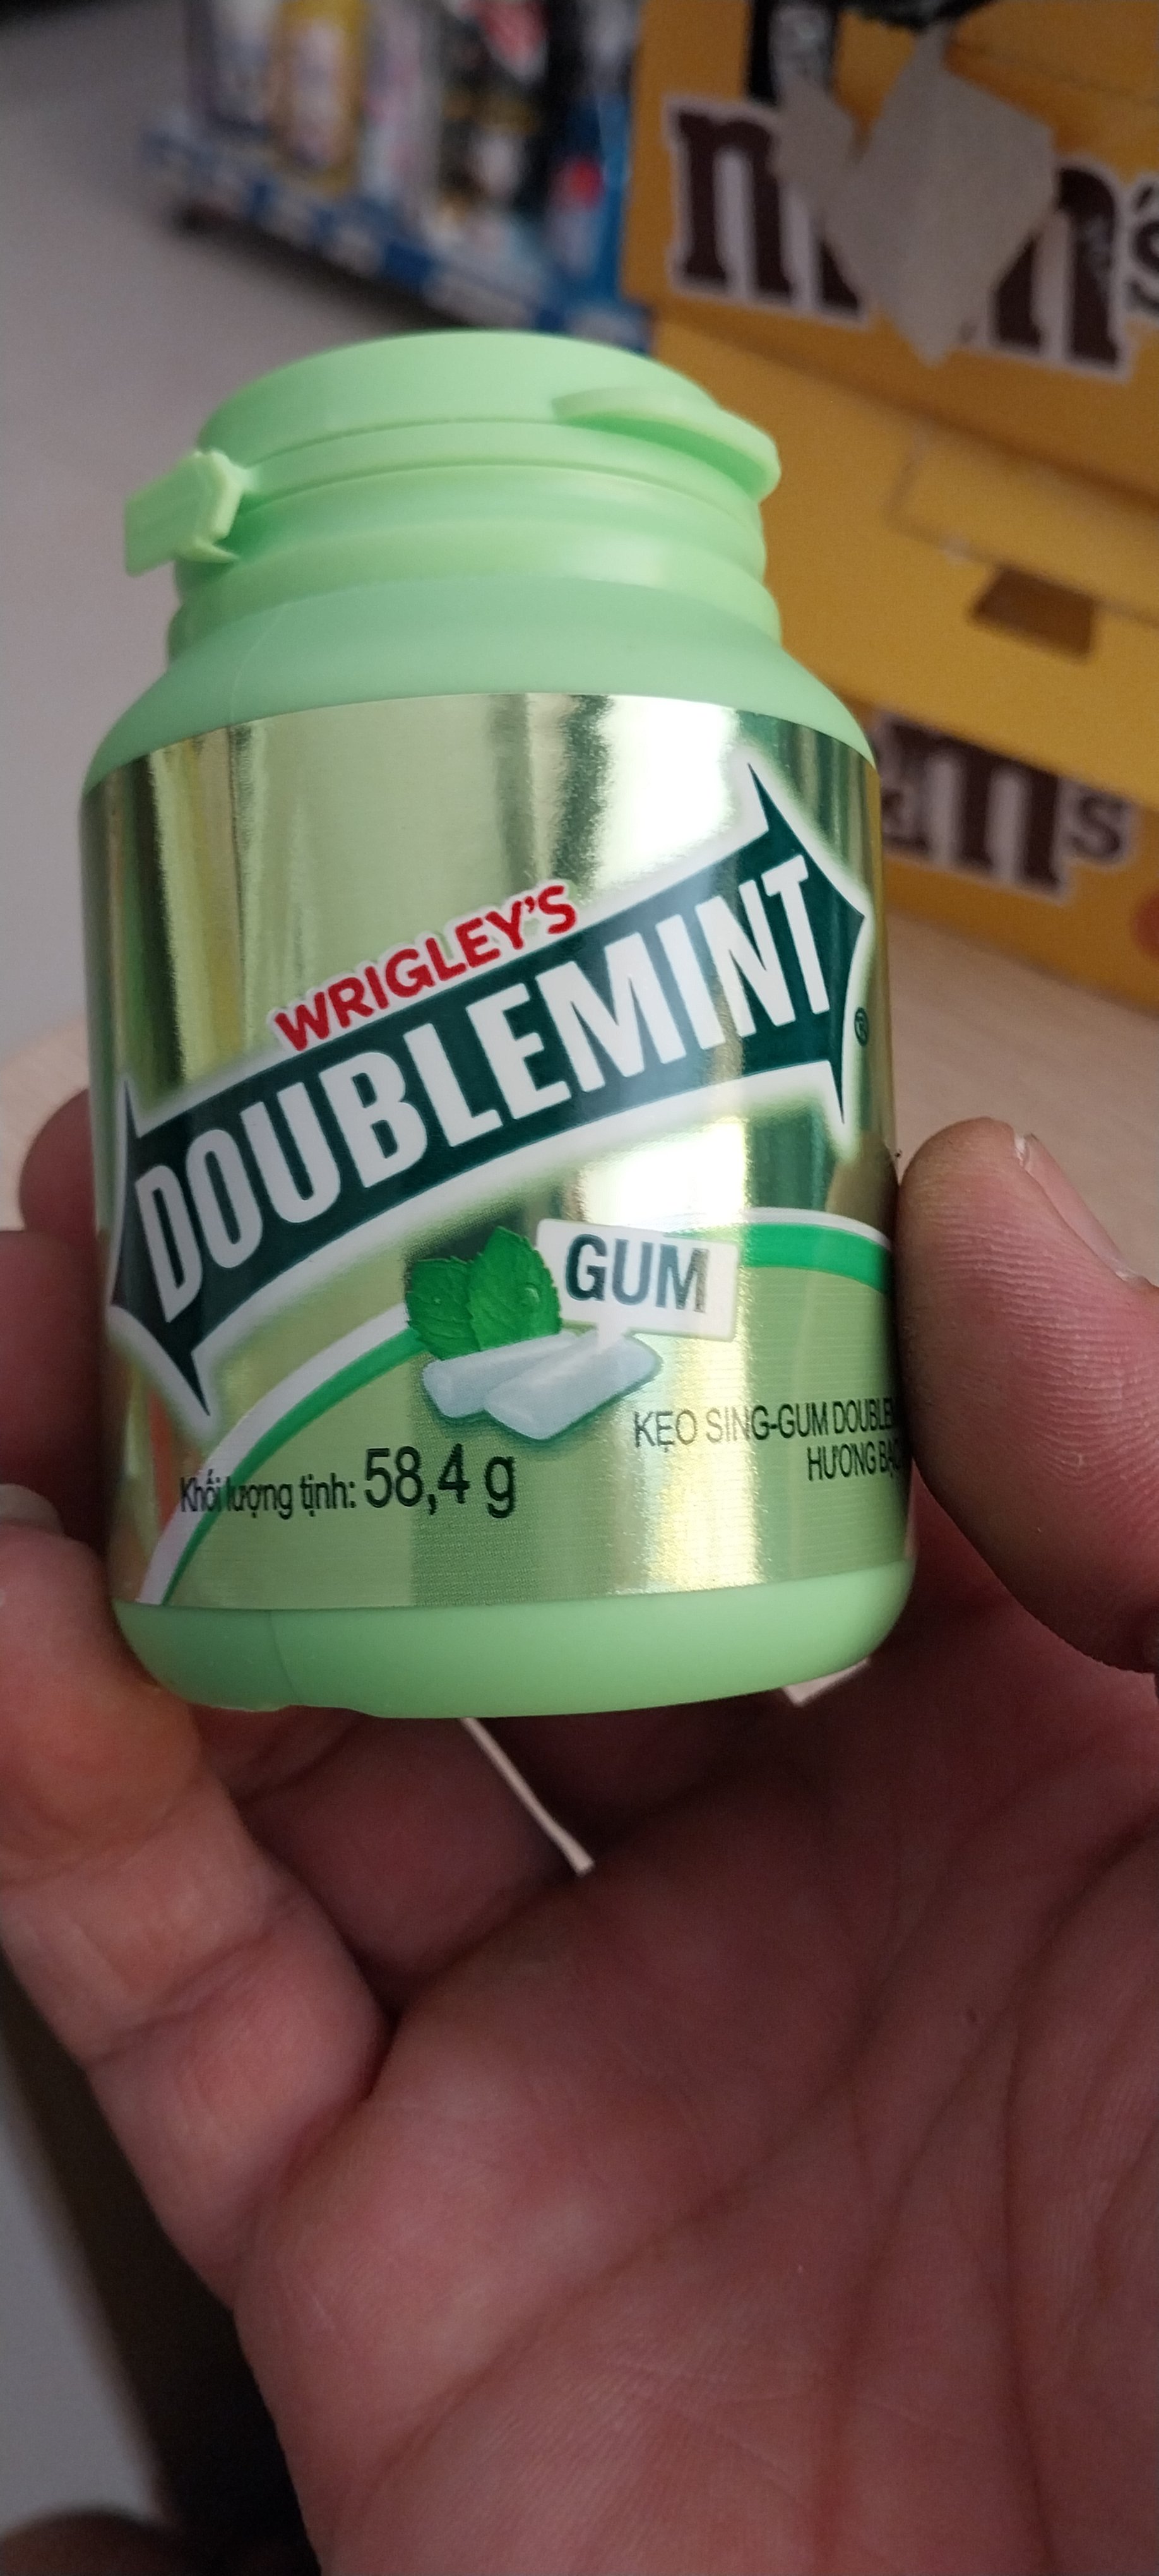 Doublemint gum 58g Kẹo sing-gum Wrigley hương bạc hà hũ 58.4g